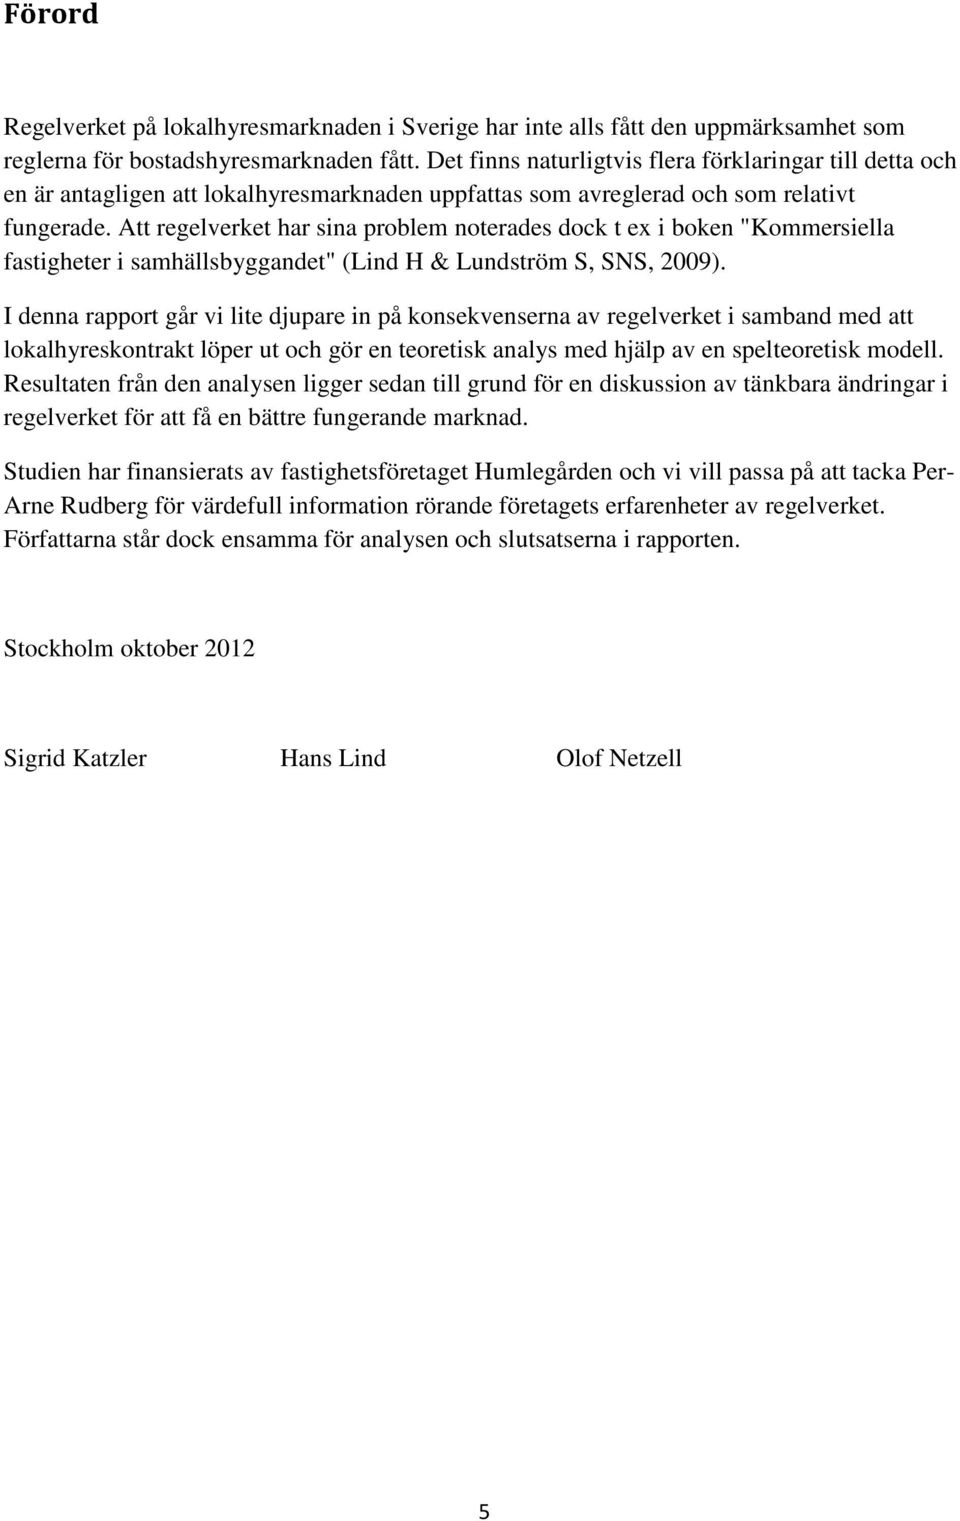 Att regelverket har sina problem noterades dock t ex i boken "Kommersiella fastigheter i samhällsbyggandet" (Lind H & Lundström S, SNS, 2009).